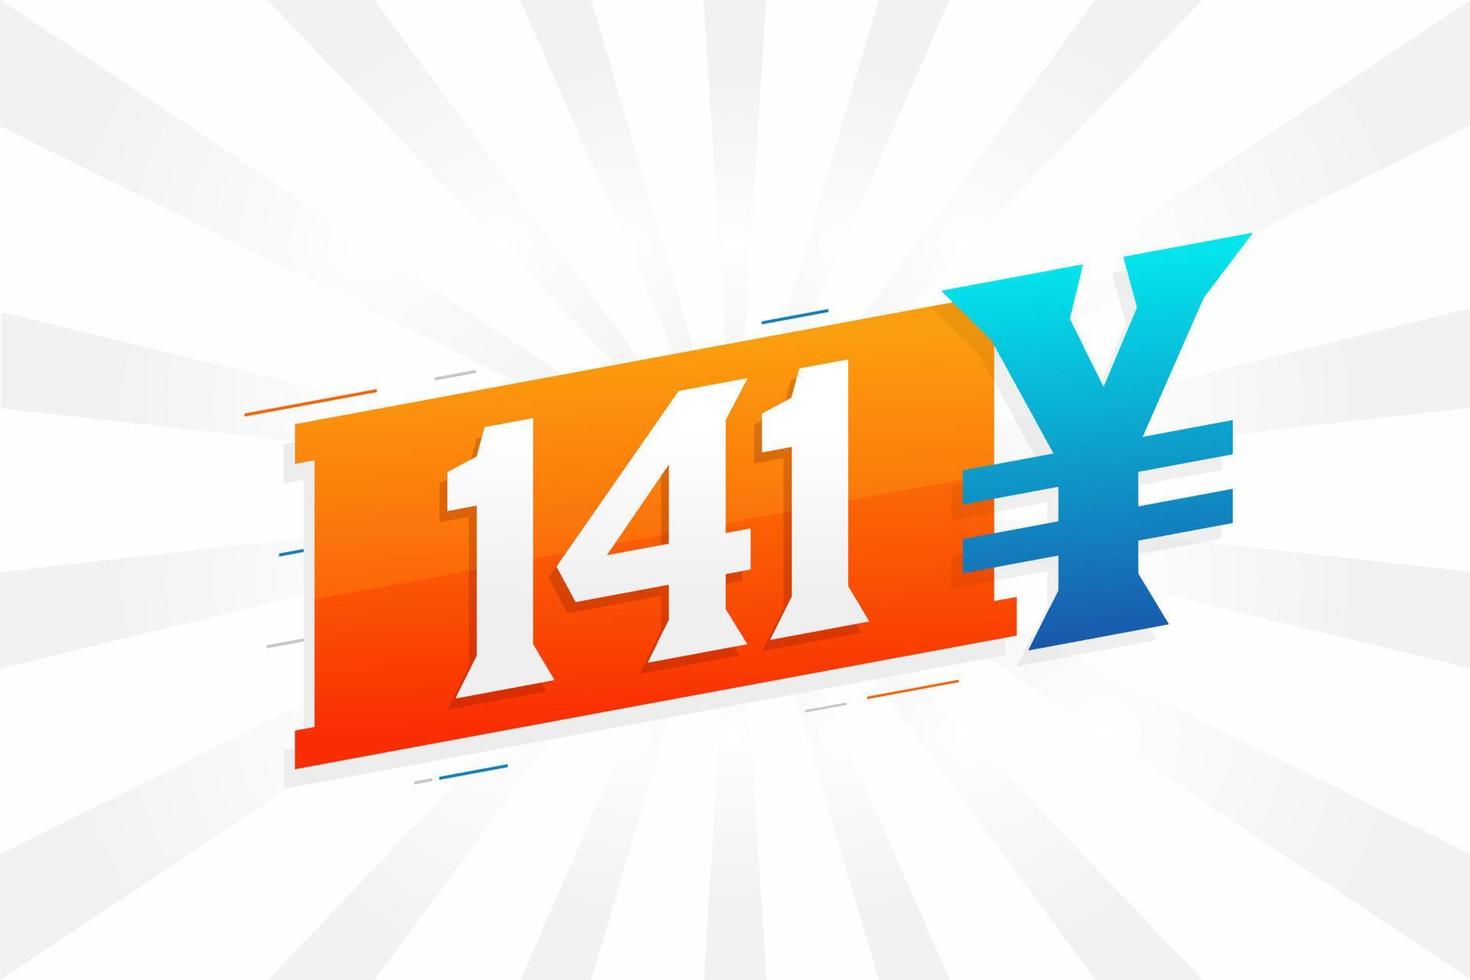 141 yuan kinesisk valuta vektor text symbol. 141 yen japansk valuta pengar stock vektor